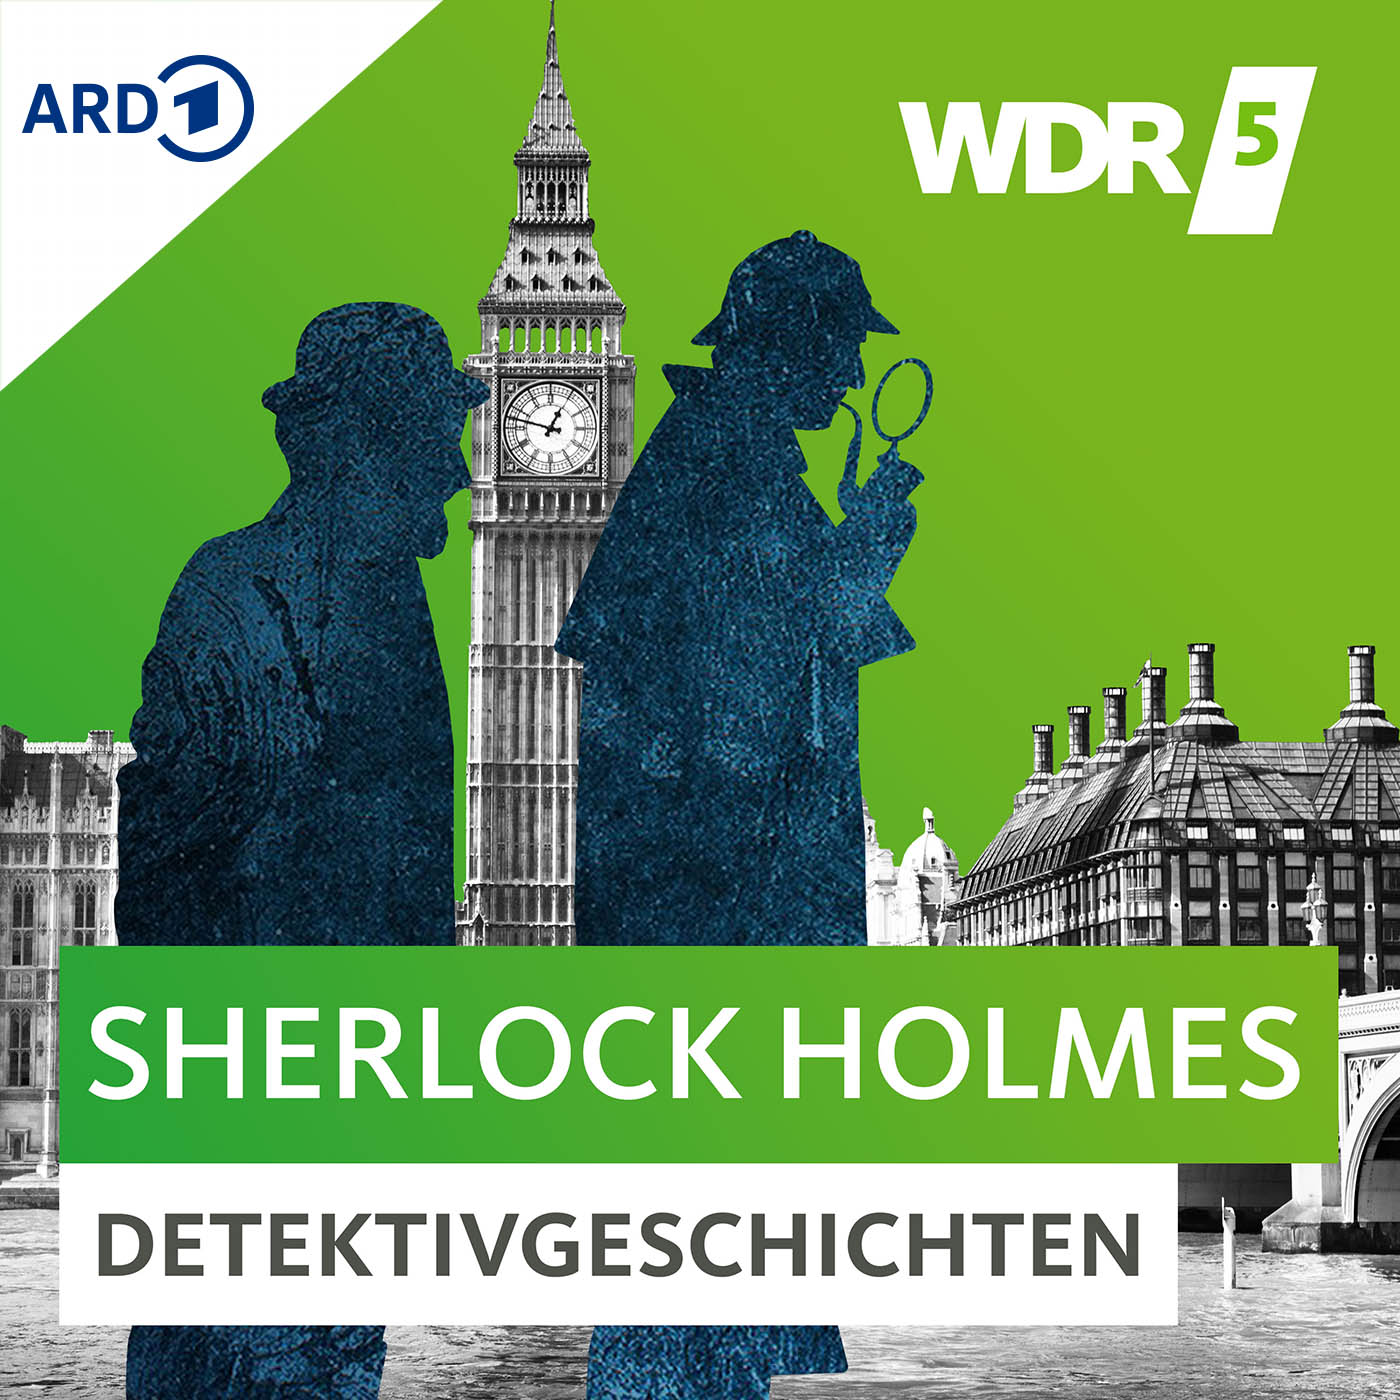 Sherlock Holmes Detektivgeschichten - Trailer